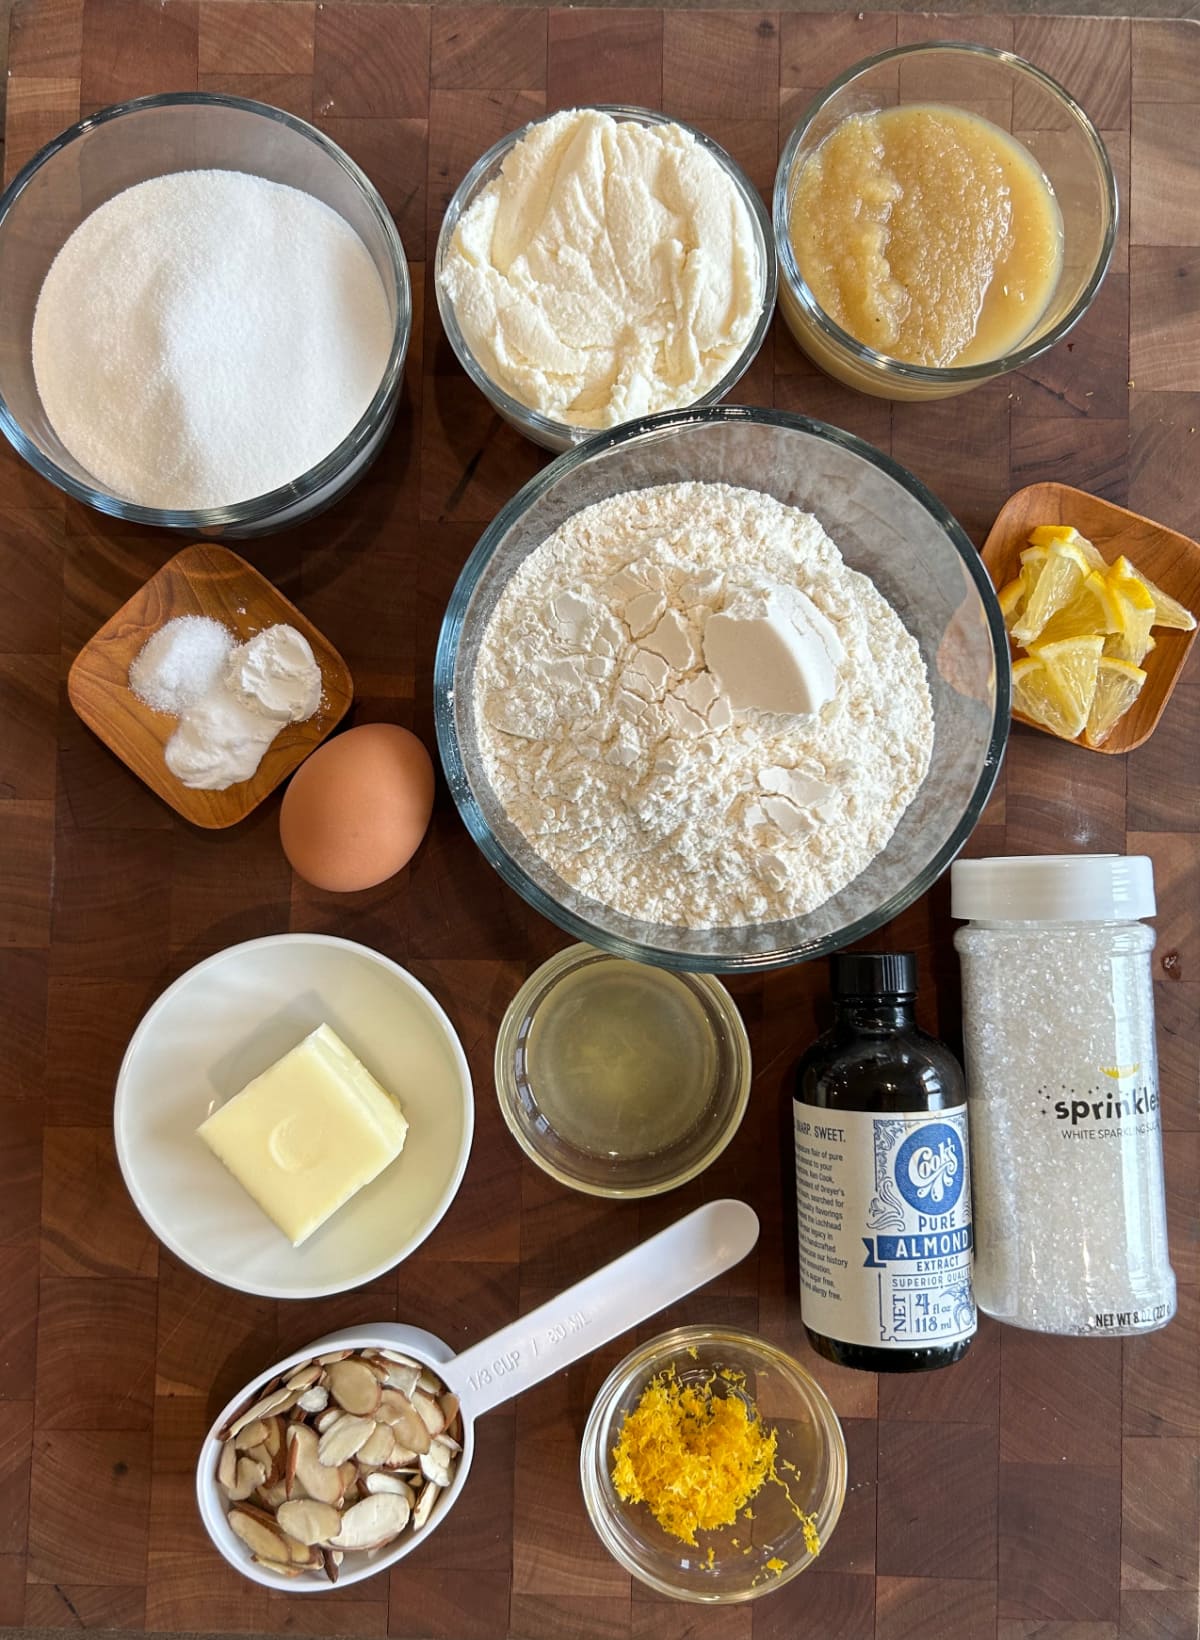 ingredients displayed for making meyer lemon ricotta muffins